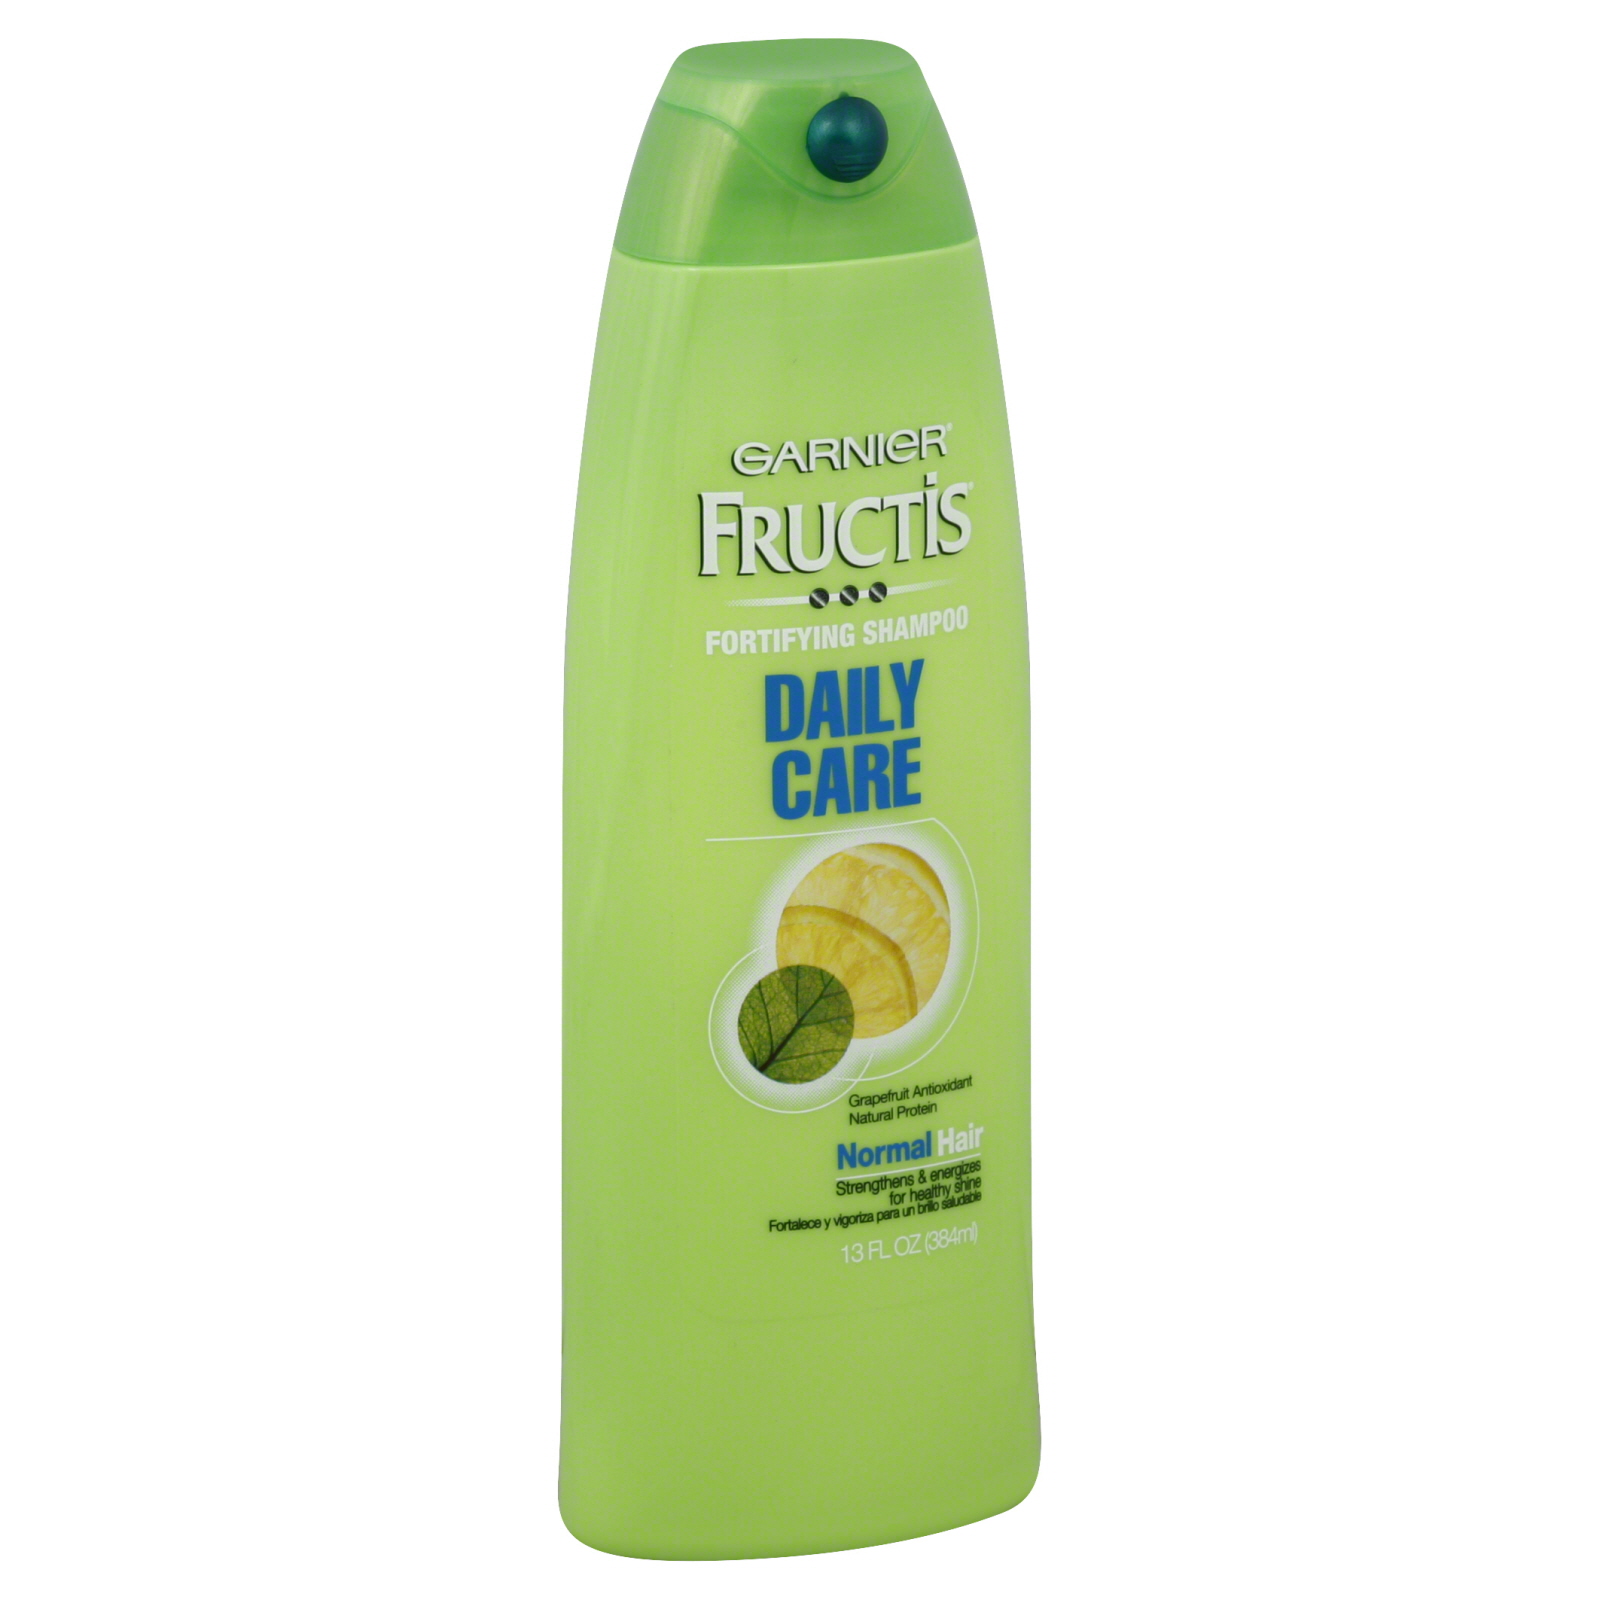 Garnier Fructis Daily Care Shampoo, 13 oz